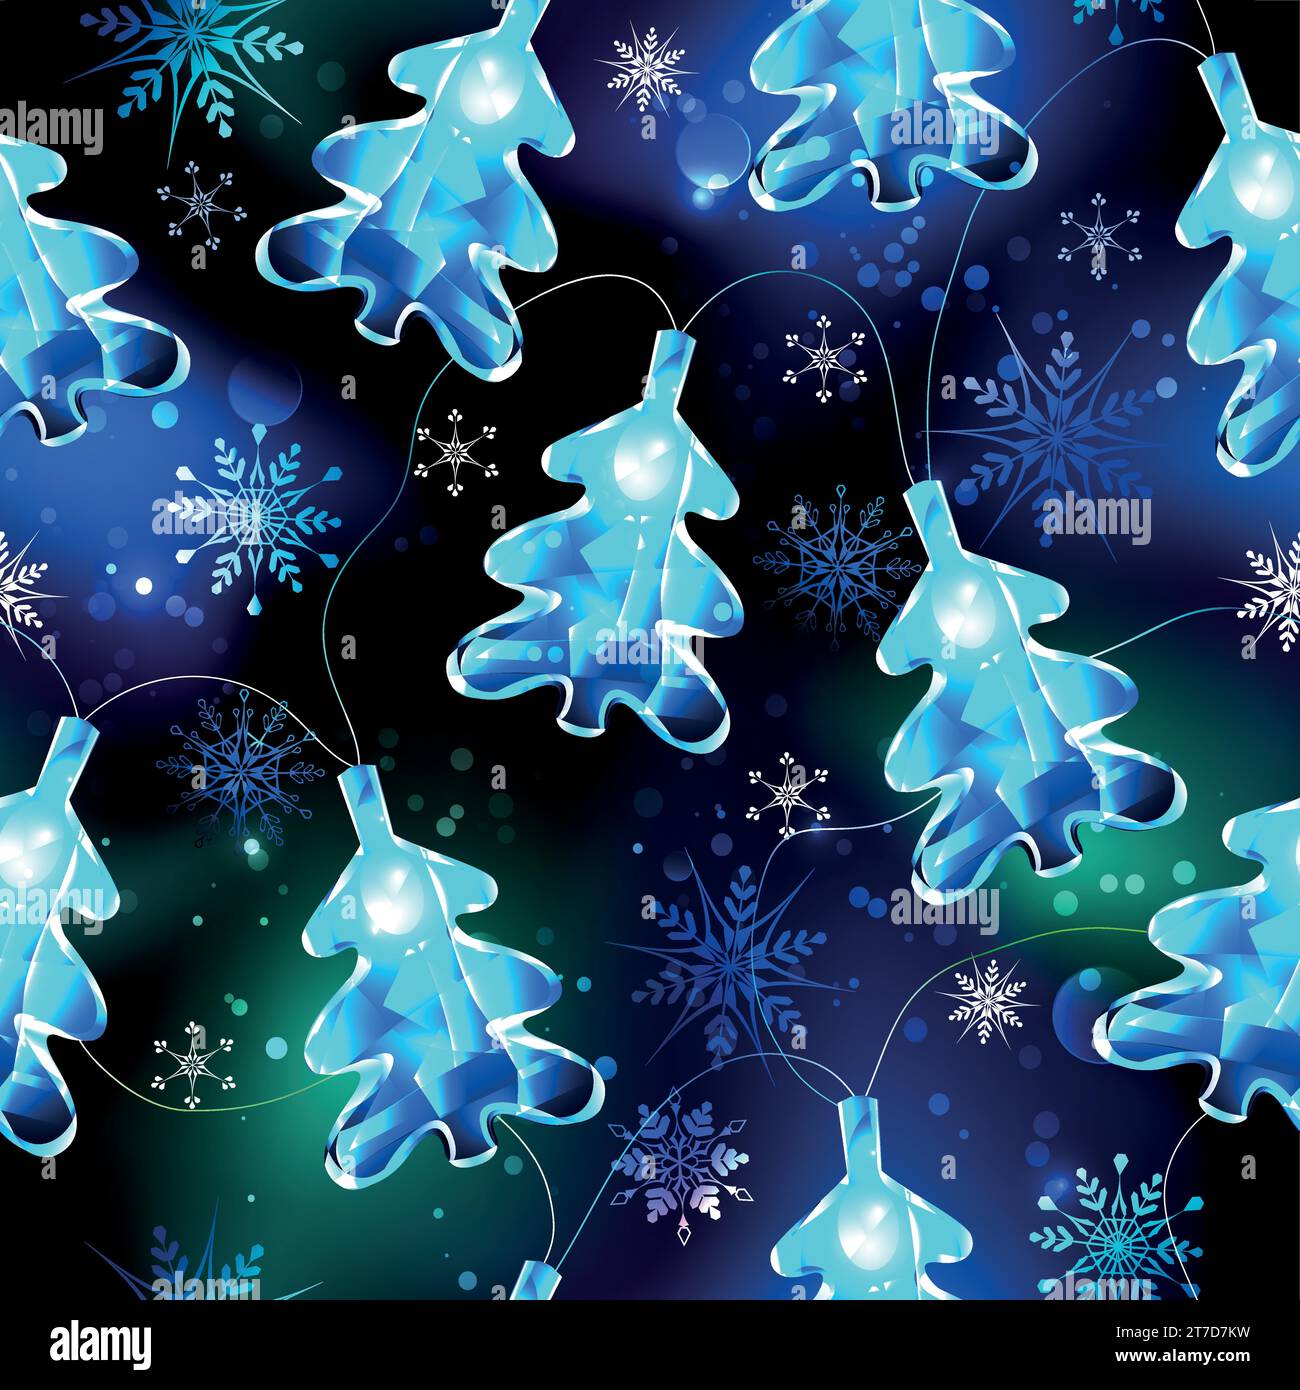 Nahtloses Muster der Weihnachtsgirlande mit leuchtenden, blauen Weihnachtsbaumlichtern auf schwarzem Hintergrund mit blauen Schneeflocken. Weihnachtsdekoration. Stock Vektor